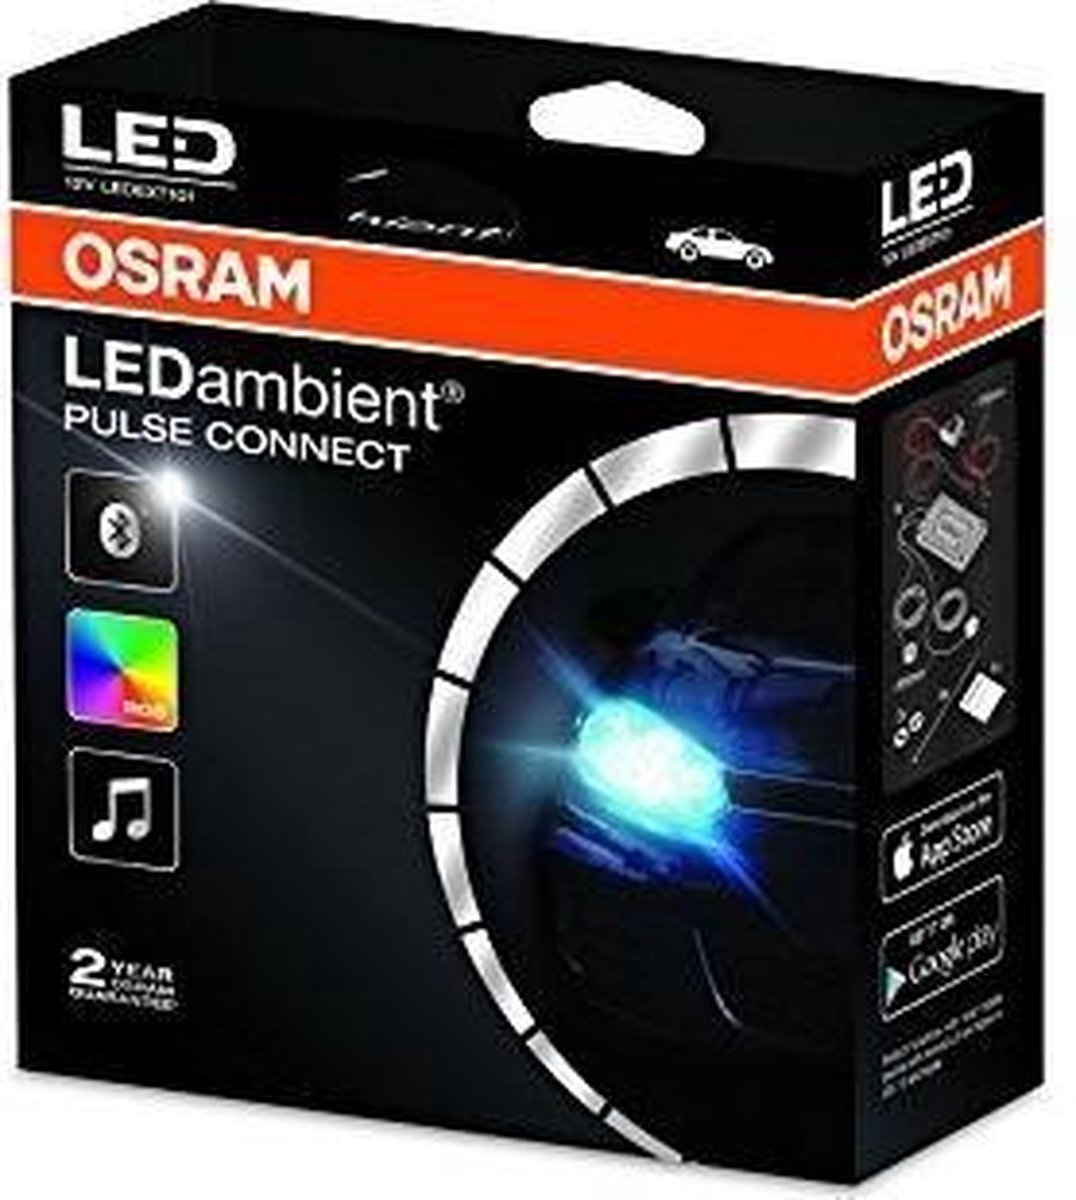 Osram LEDambient Pulse Connect LEDEXT101